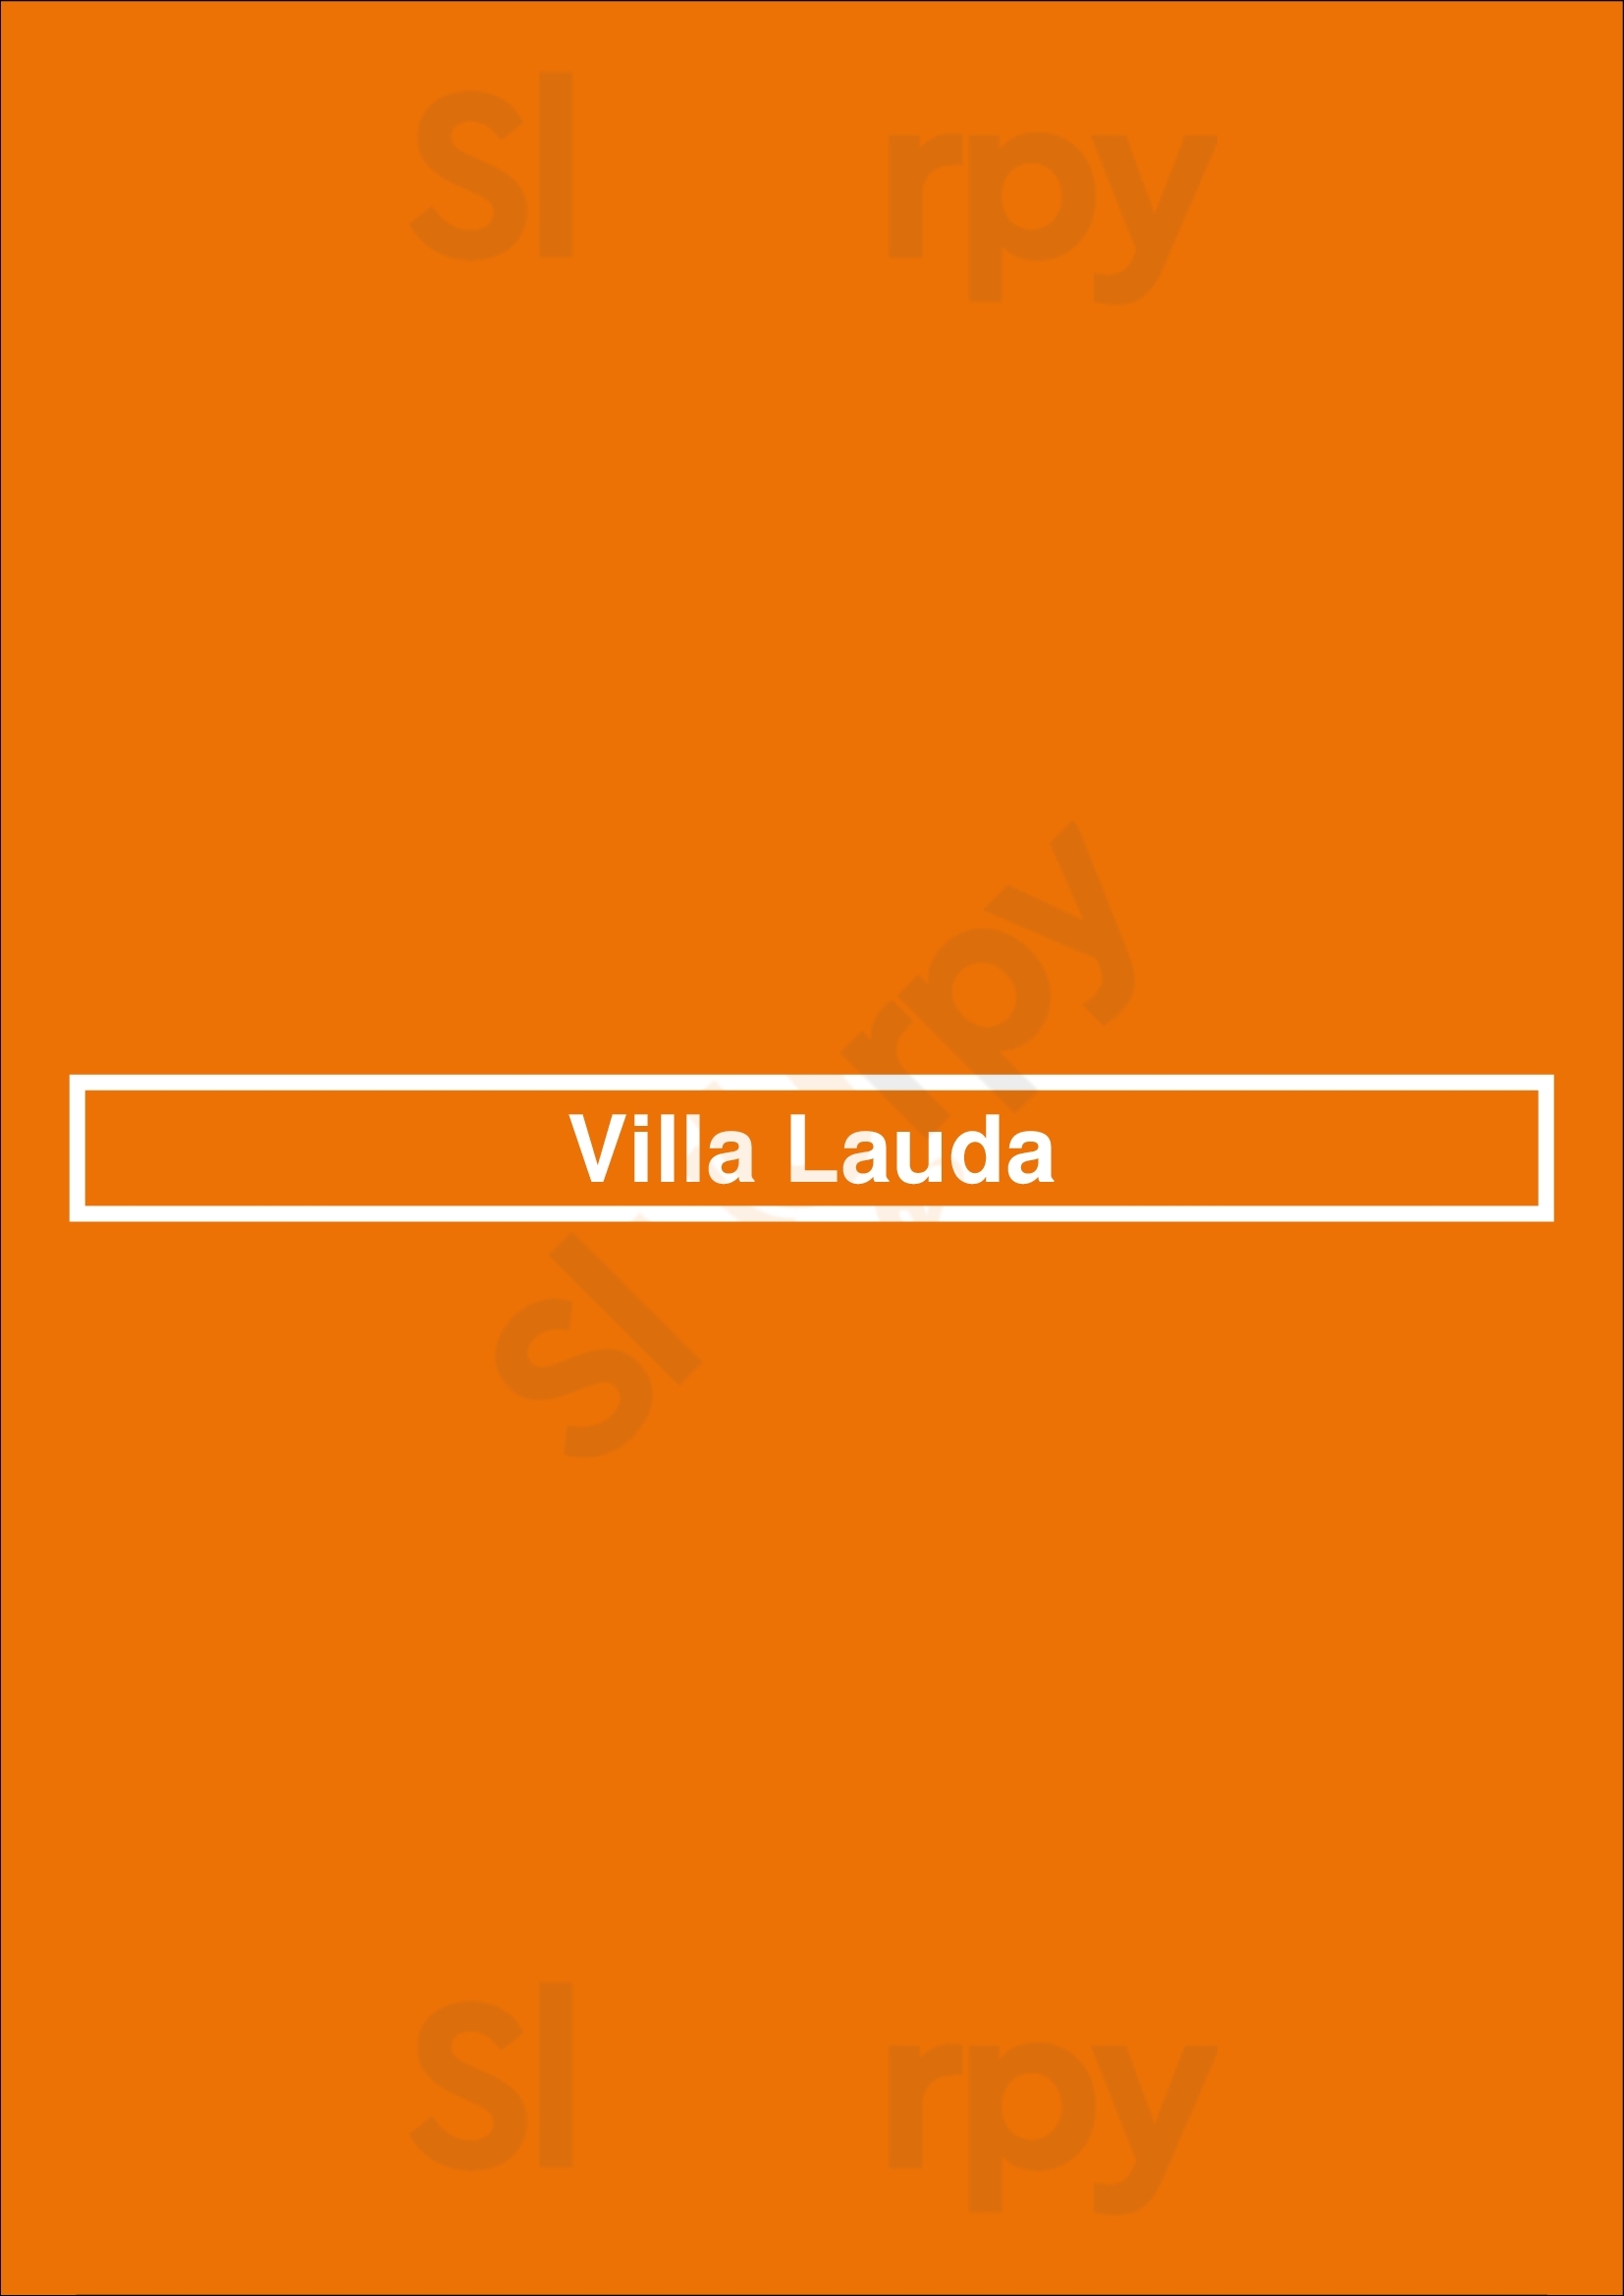 Villa Lauda Frankfurt am Main Menu - 1